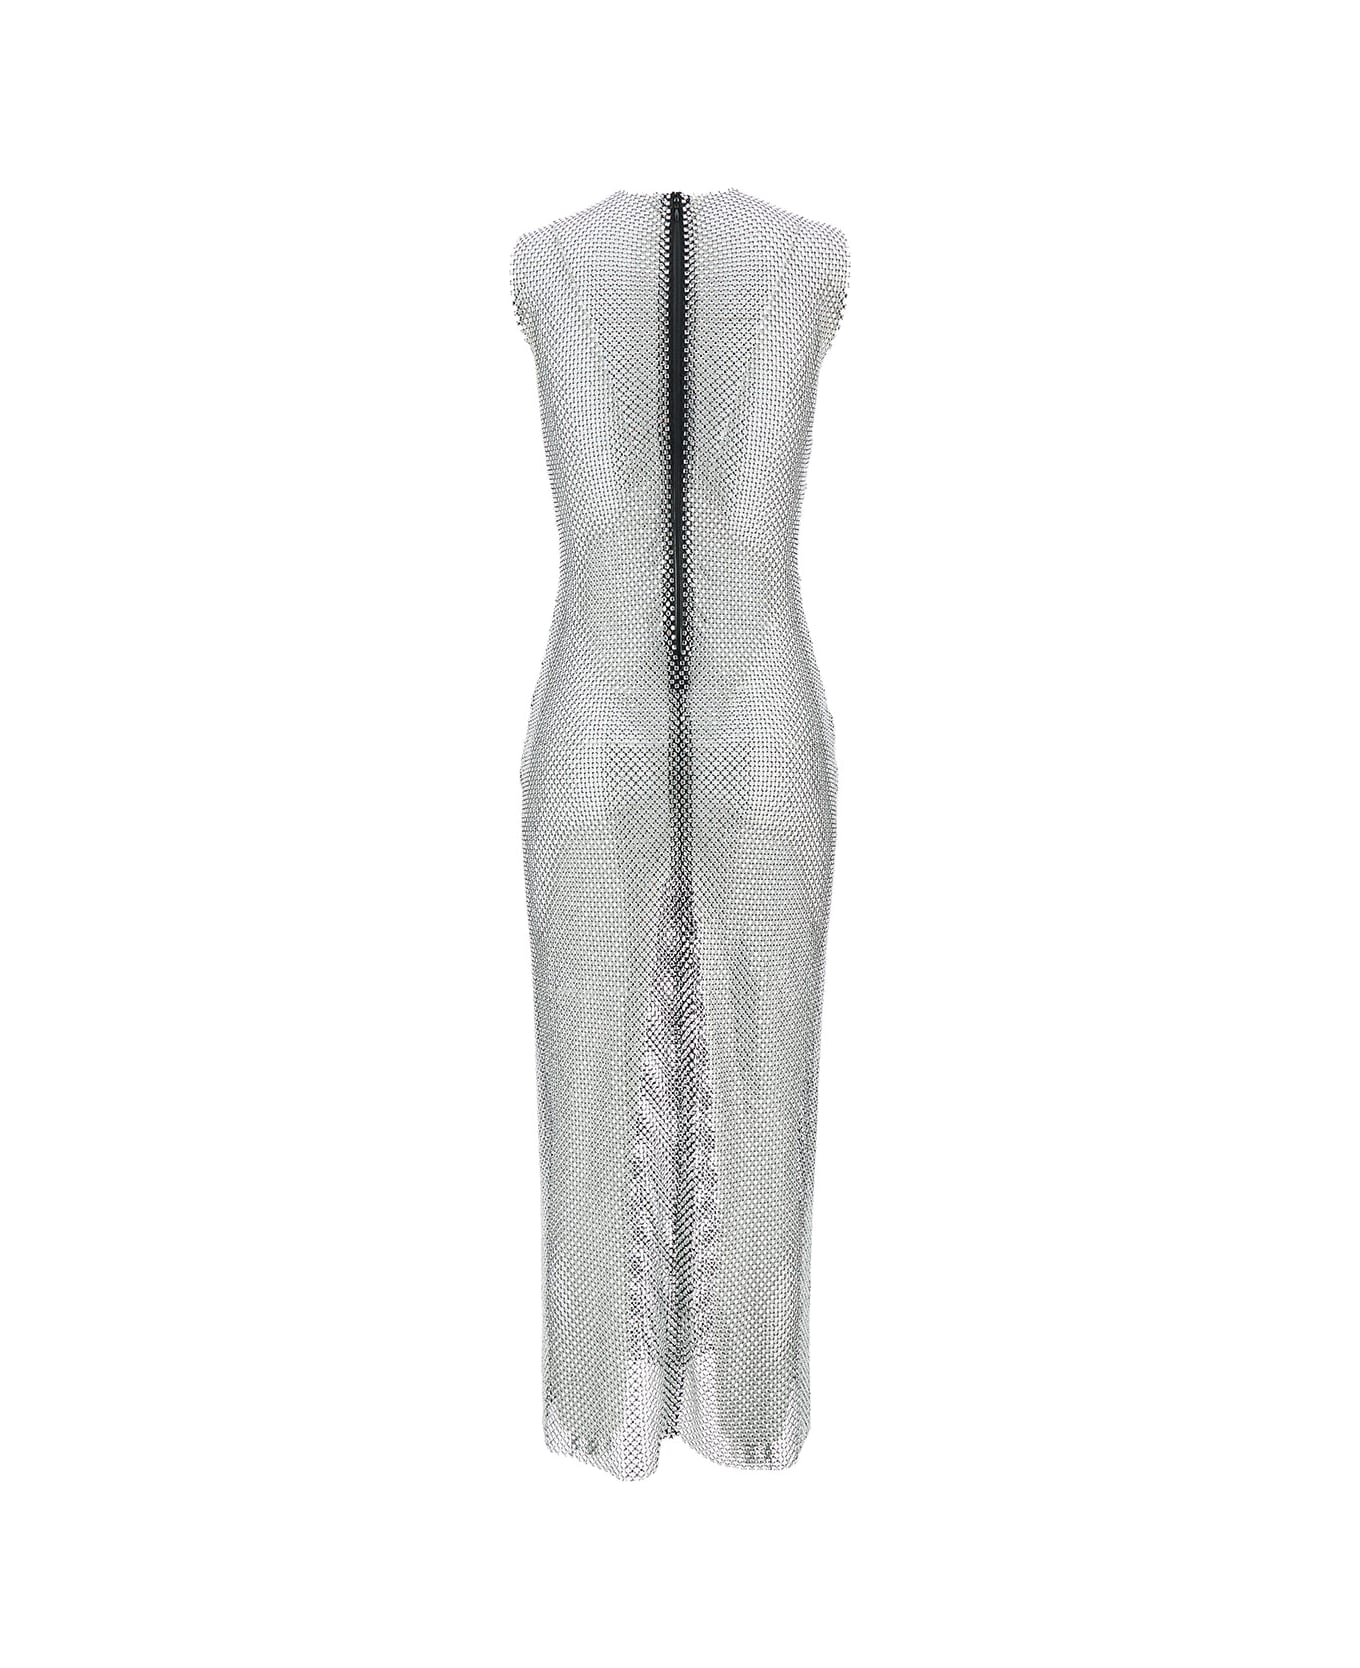 Philosophy di Lorenzo Serafini Long Silver Dress With All-over Swarovski In Mesh Woman - Metallic